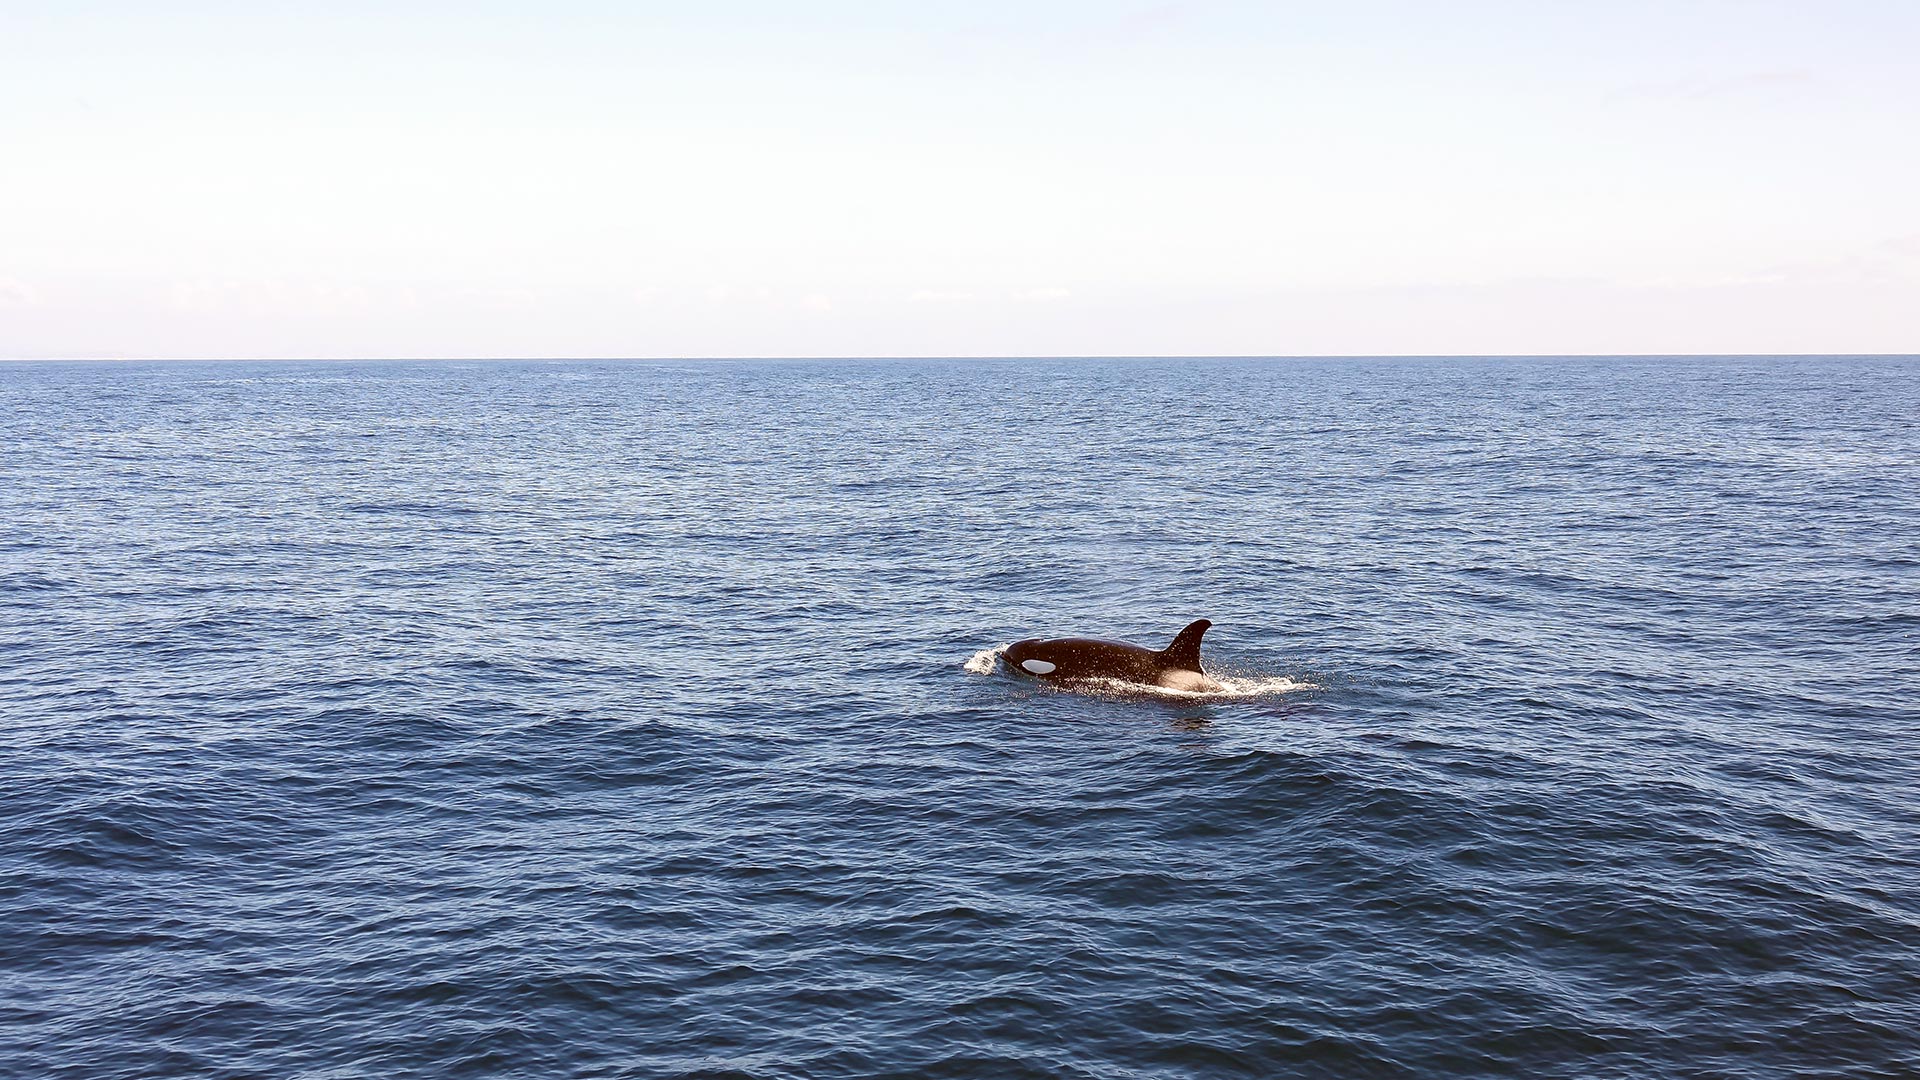 Whale surfacing near Long Beach